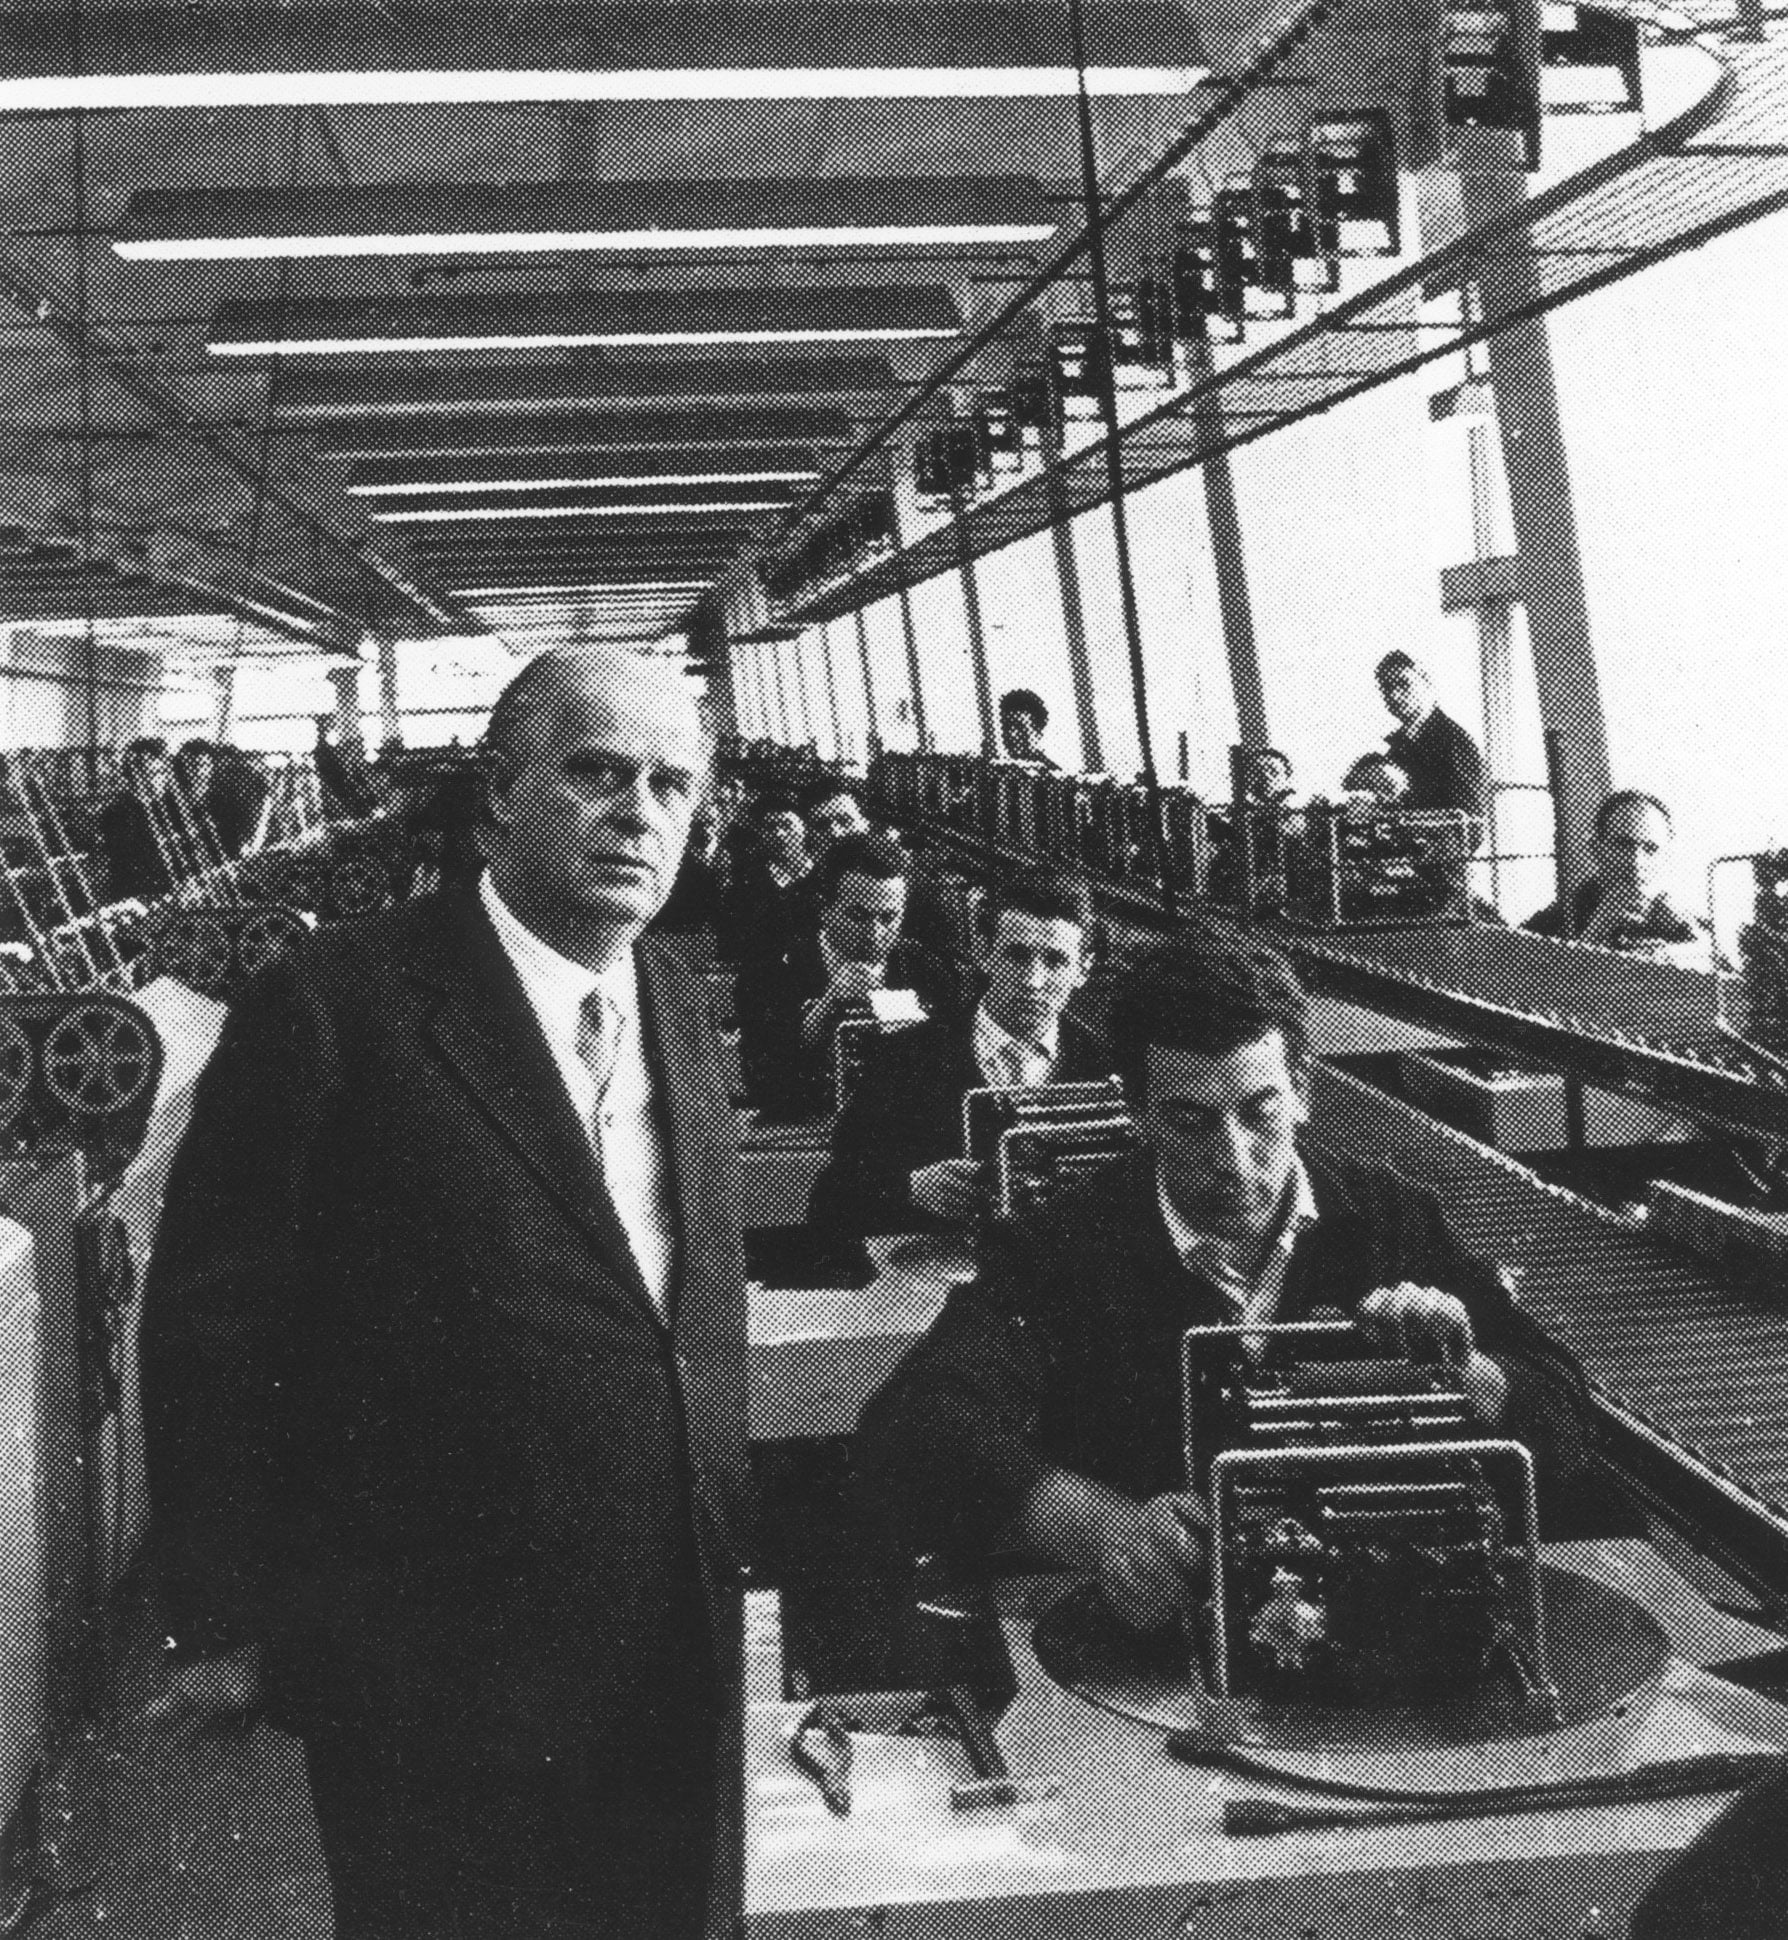 Adriano Olivetti ritratto in fabbrica con i suoi operai, nel 1950 circa